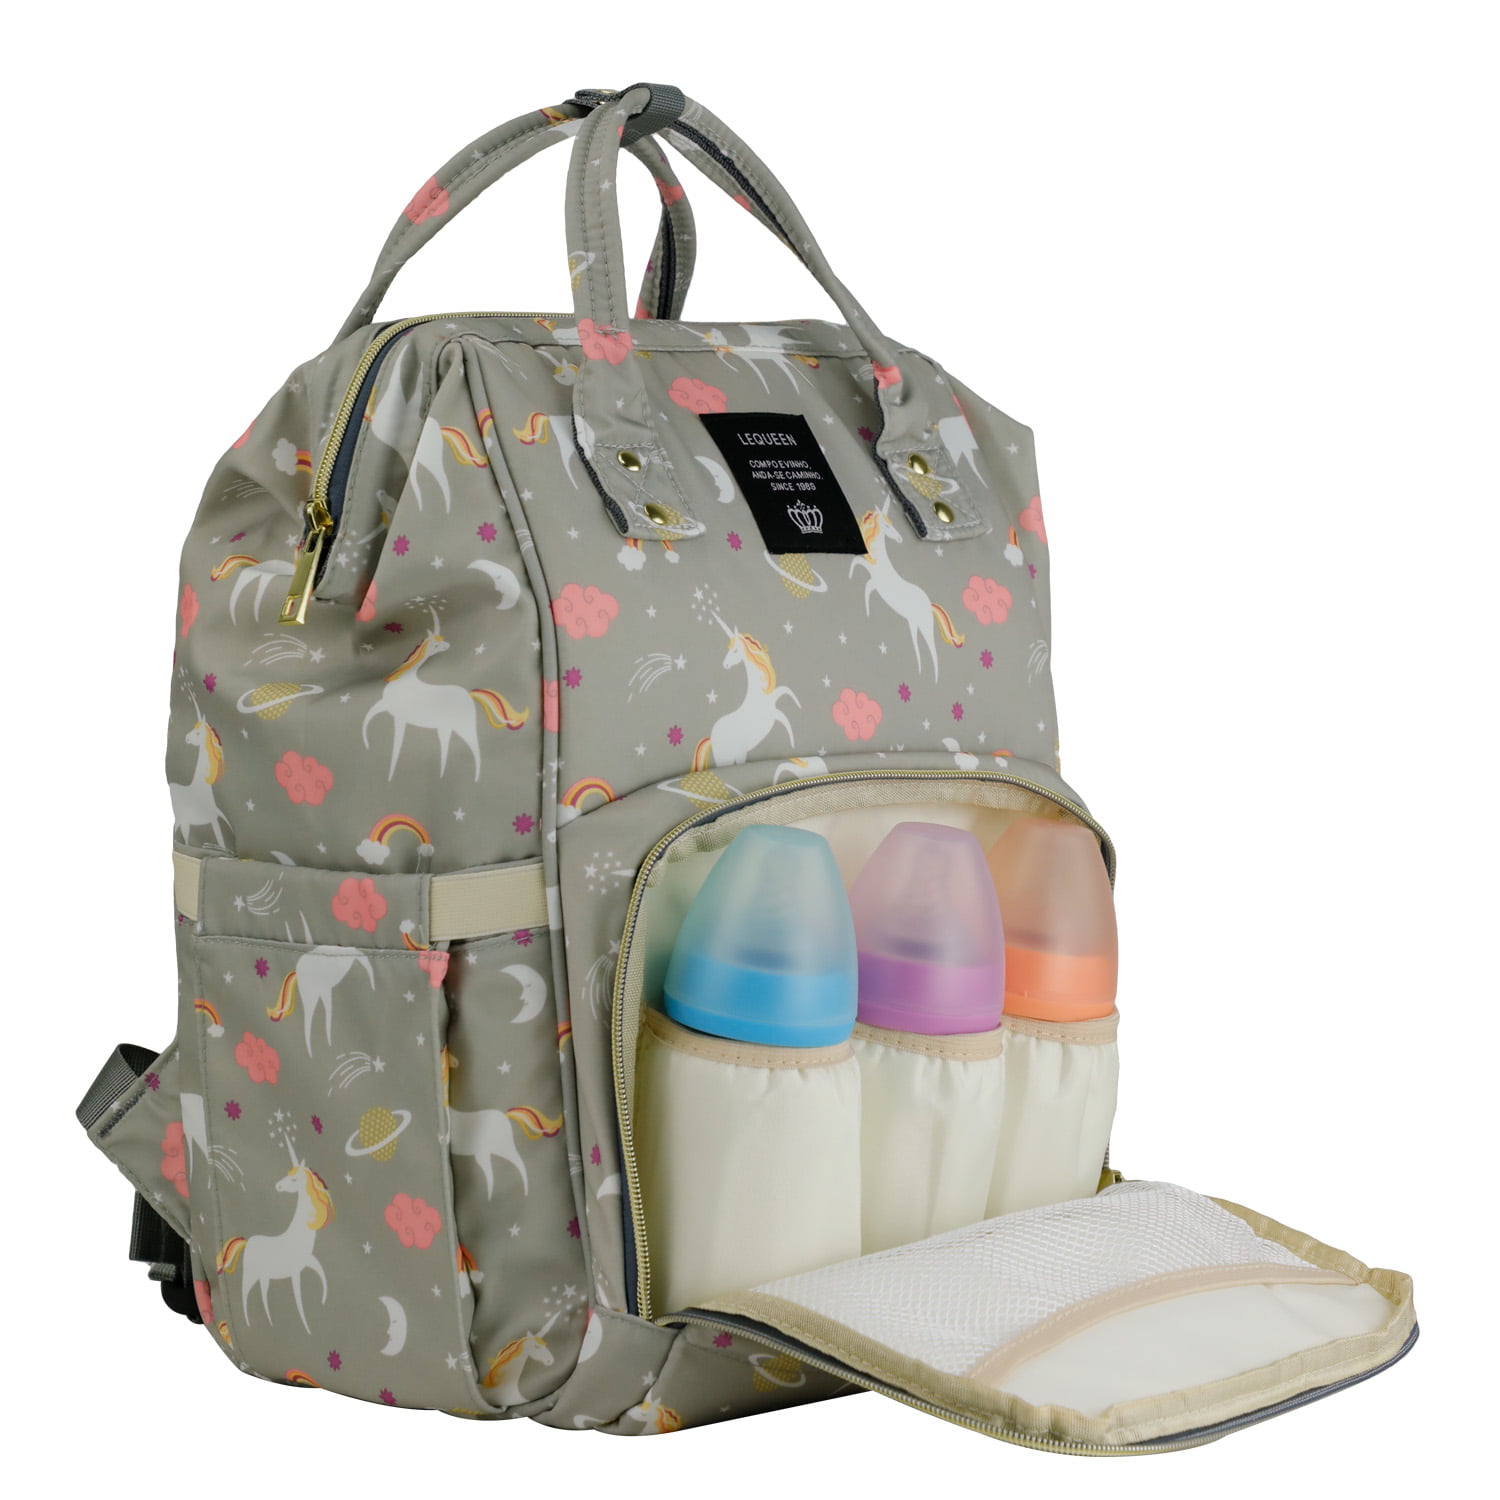 LEQUEEN Waterproof Diaper Backpack - Light Gray